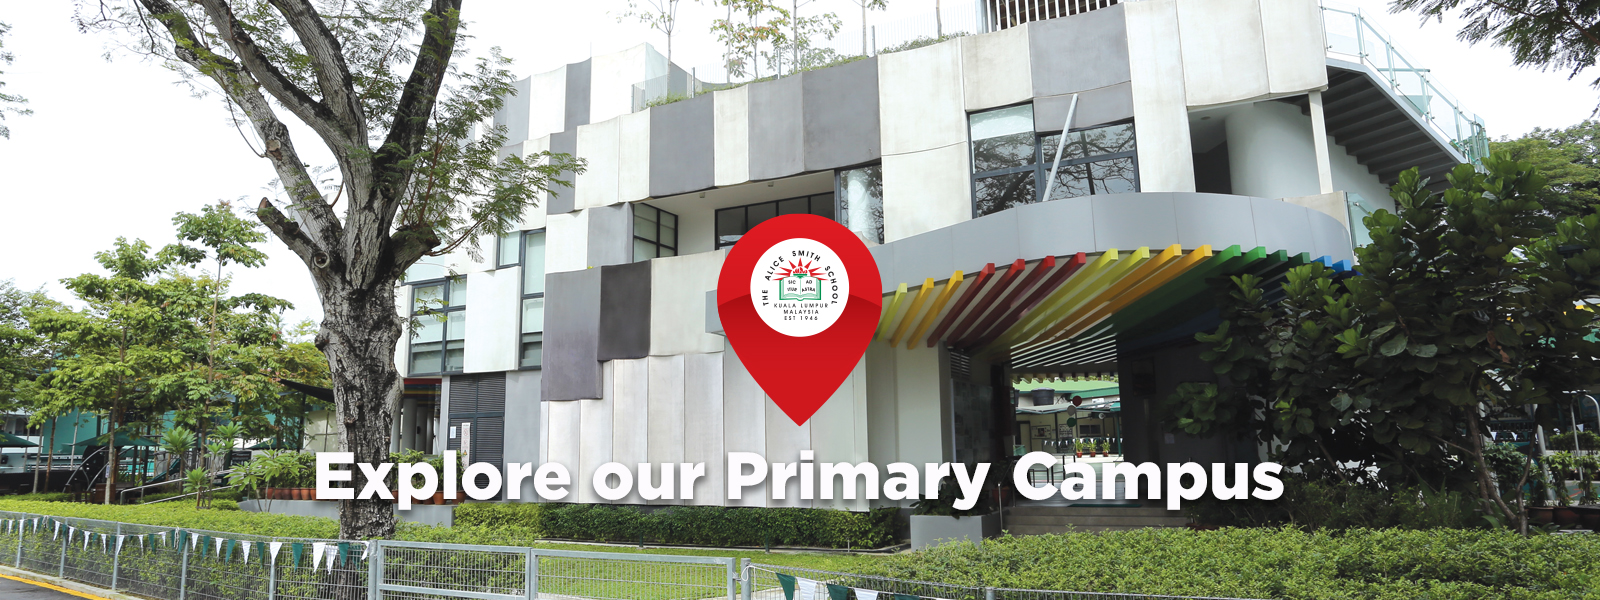 Explore primary campus